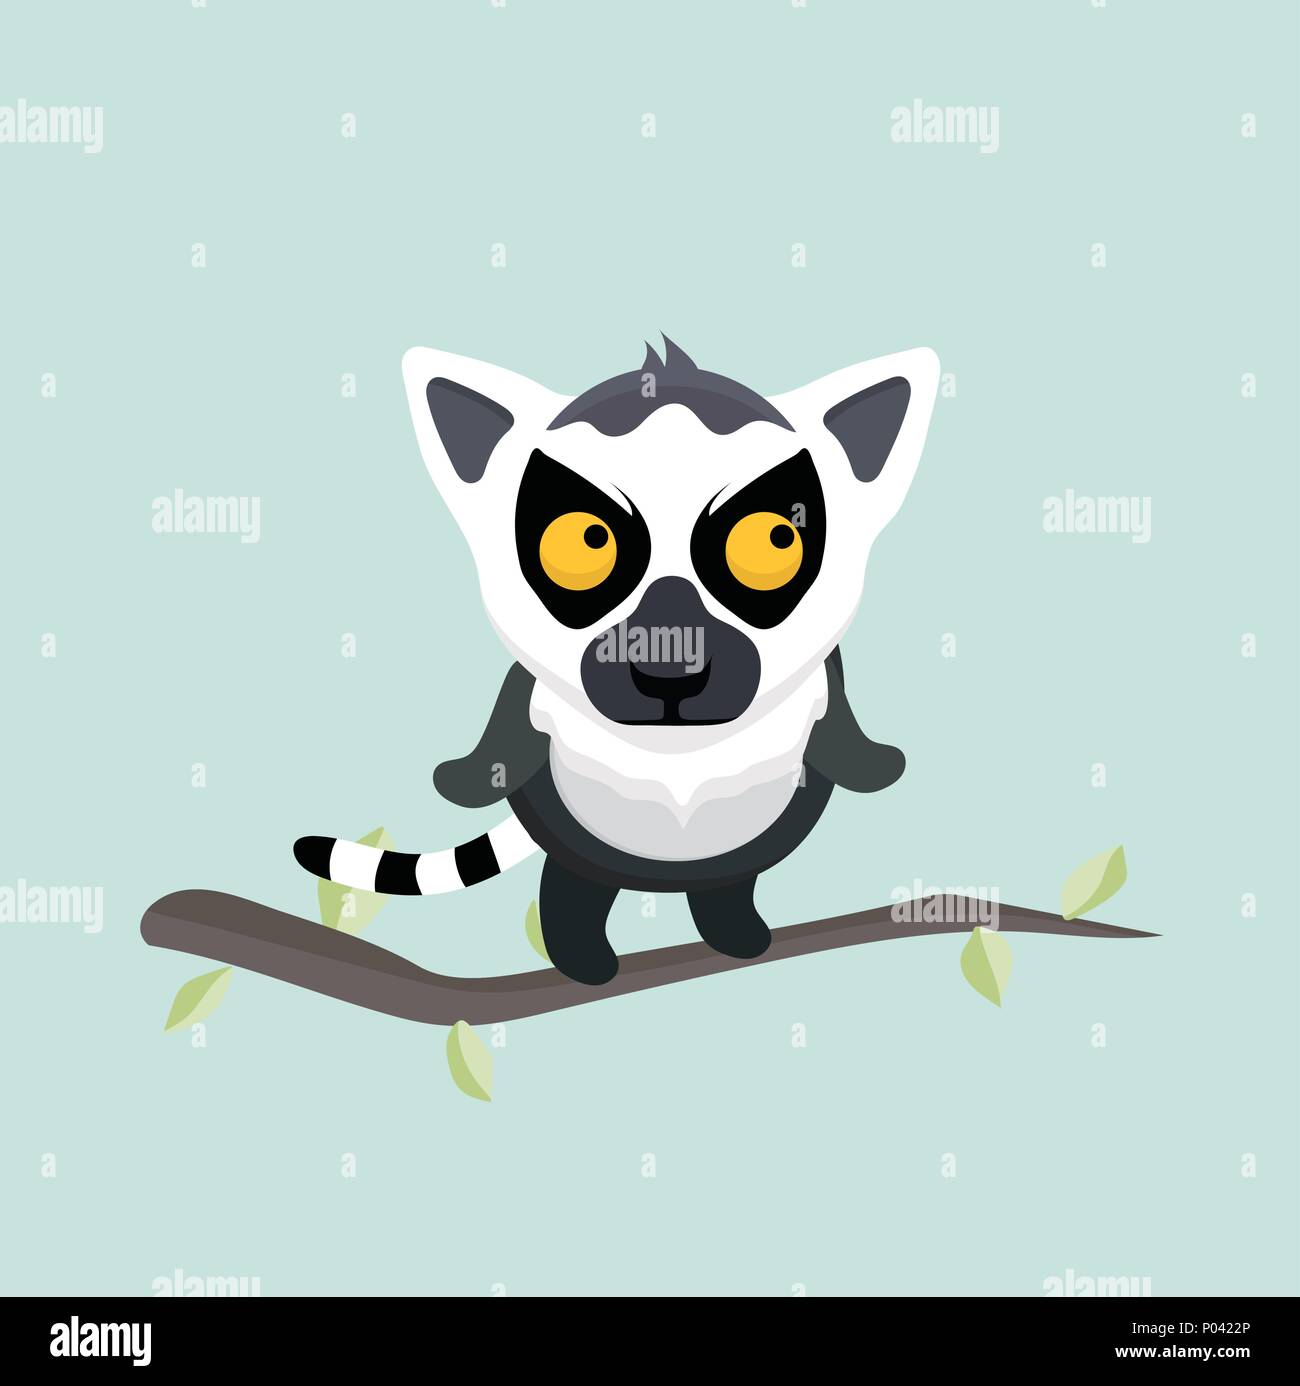 Cute cartoon ring tailed lemur. Stock Vector